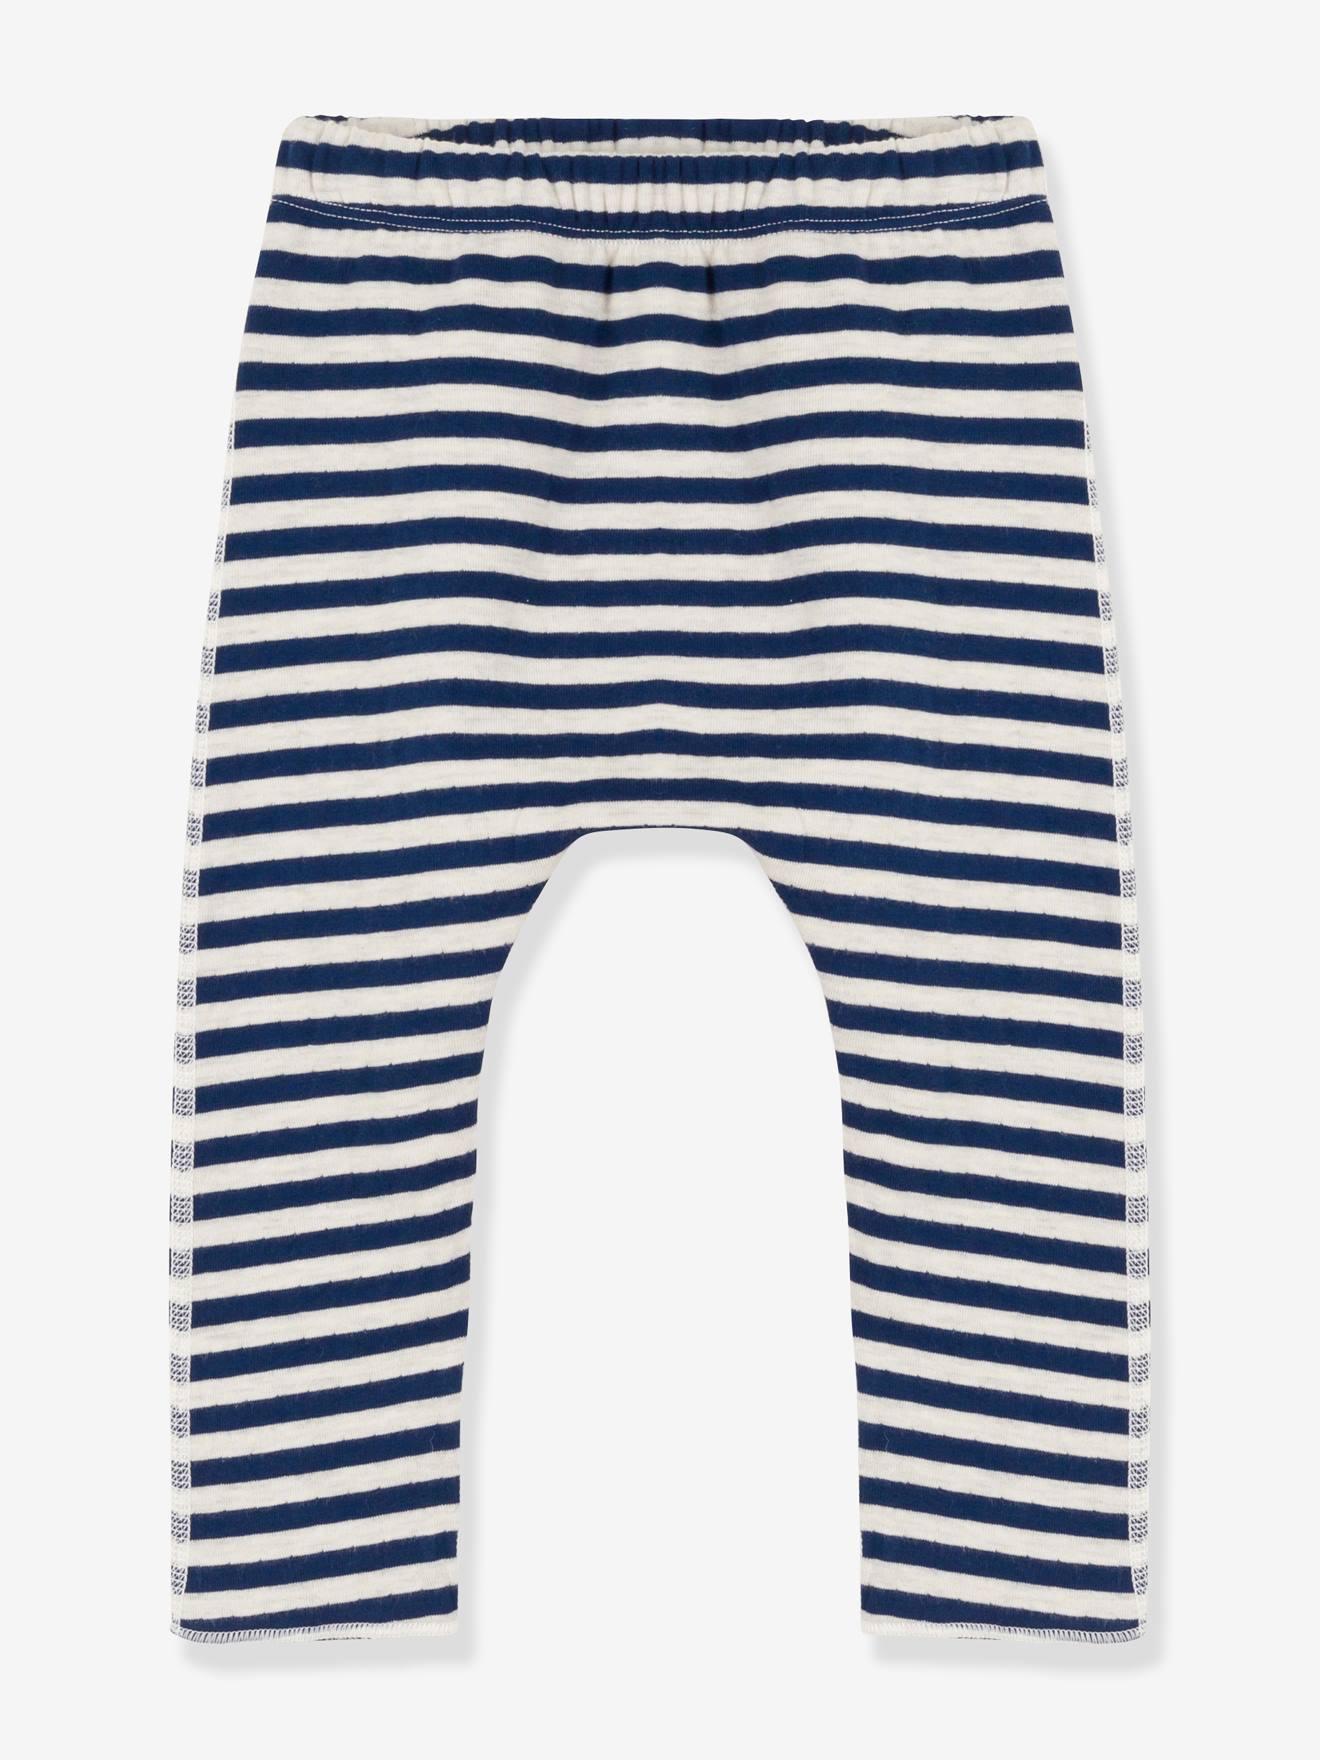 Striped Double Knit Trousers for Babies - PETIT BATEAU blue